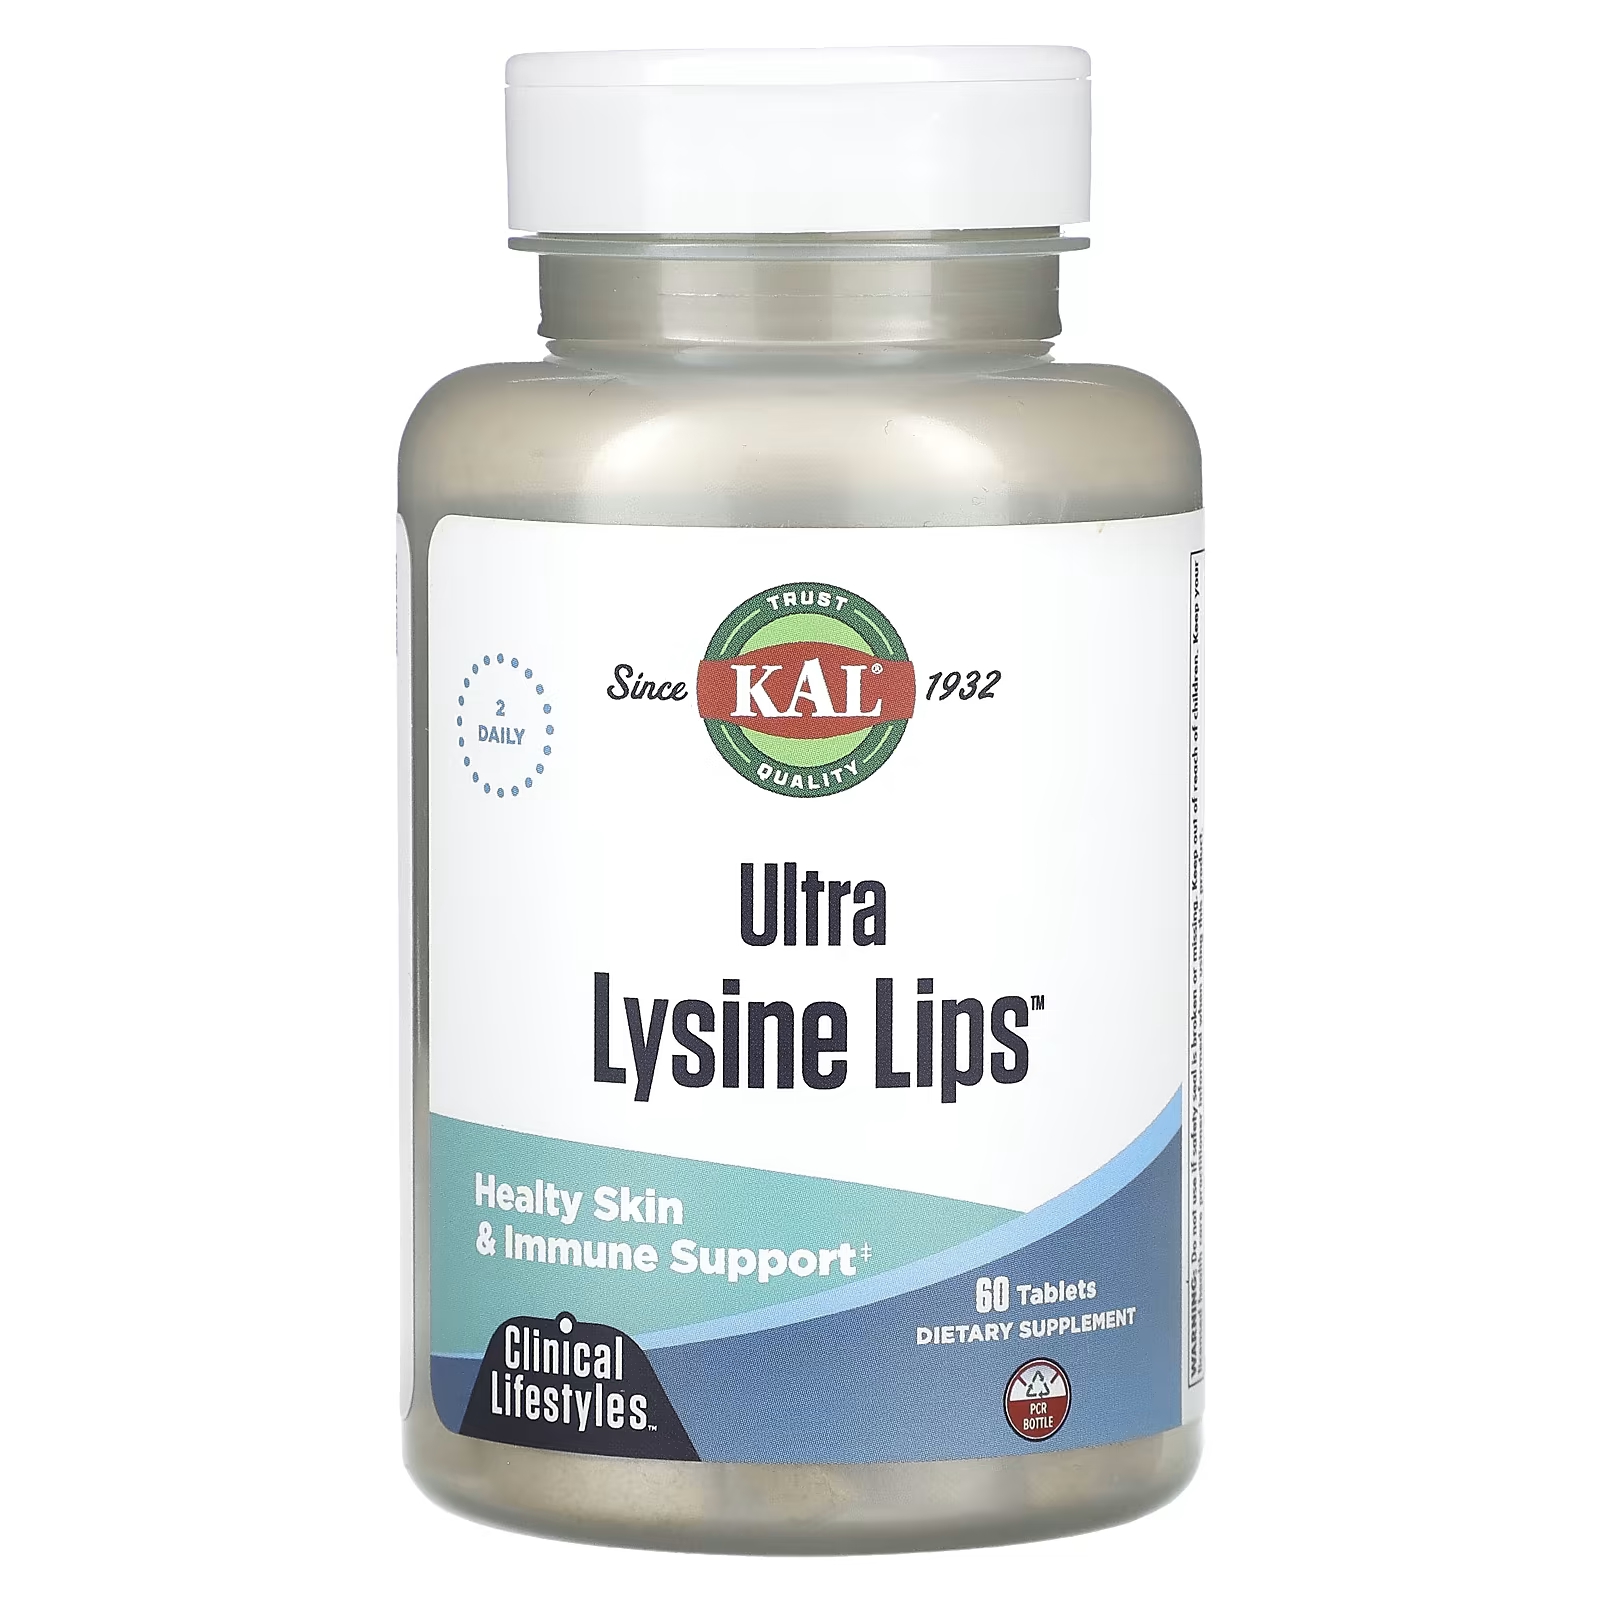 Пищевая добавка Kal Ultra Lysine Lips, 60 таблеток цена и фото